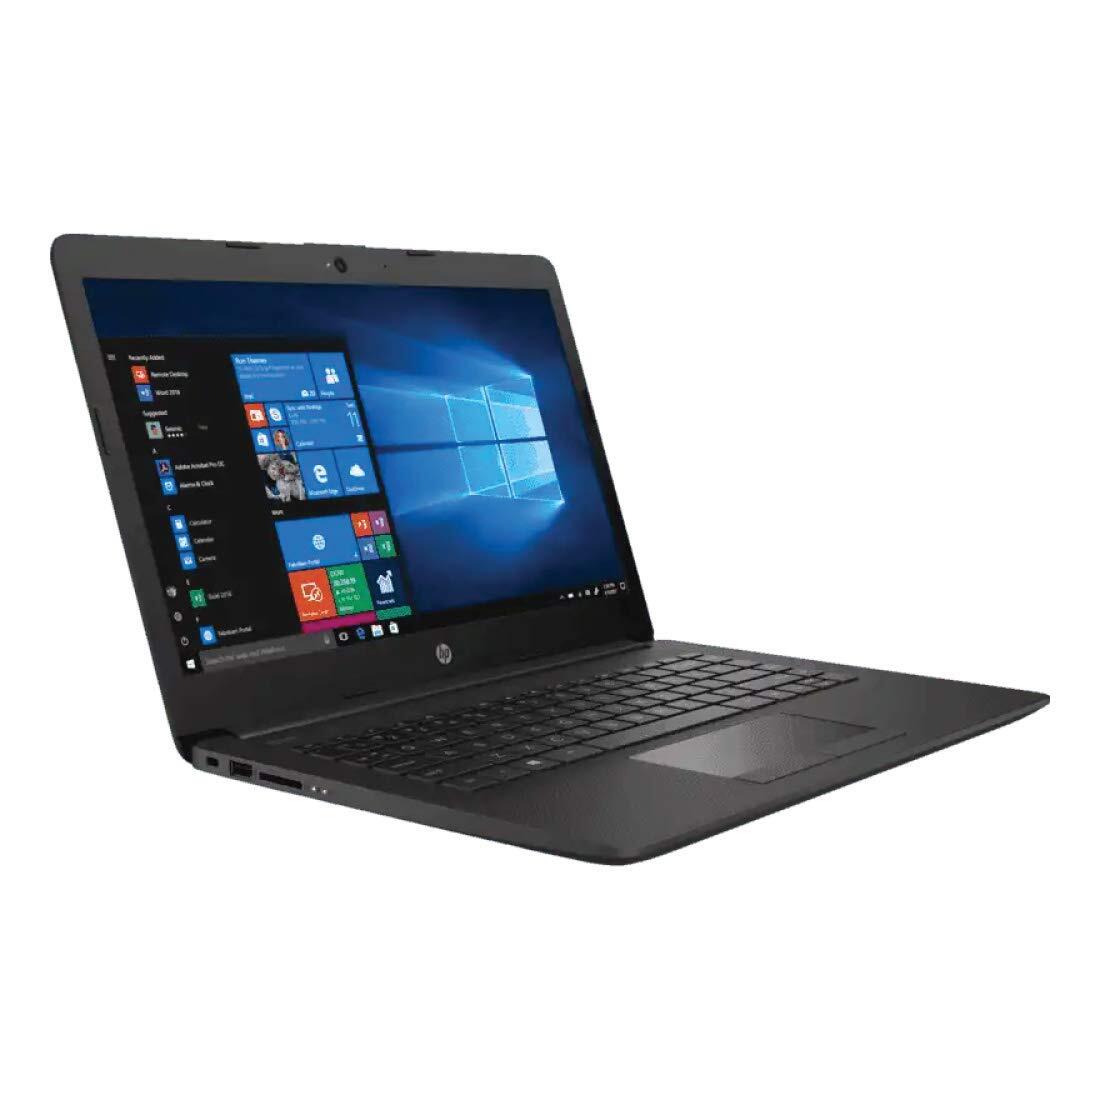 HP 240 G7 Laptop 1S5F1PA#ACJ (10th Gen Intel Core i3-1005G1/4 GB RAM/1TB HDD/14.0 inch/DOS/Intel UHD Graphics/1.52 kg) Dark Ash Silver-M000000000531 www.mysocially.com